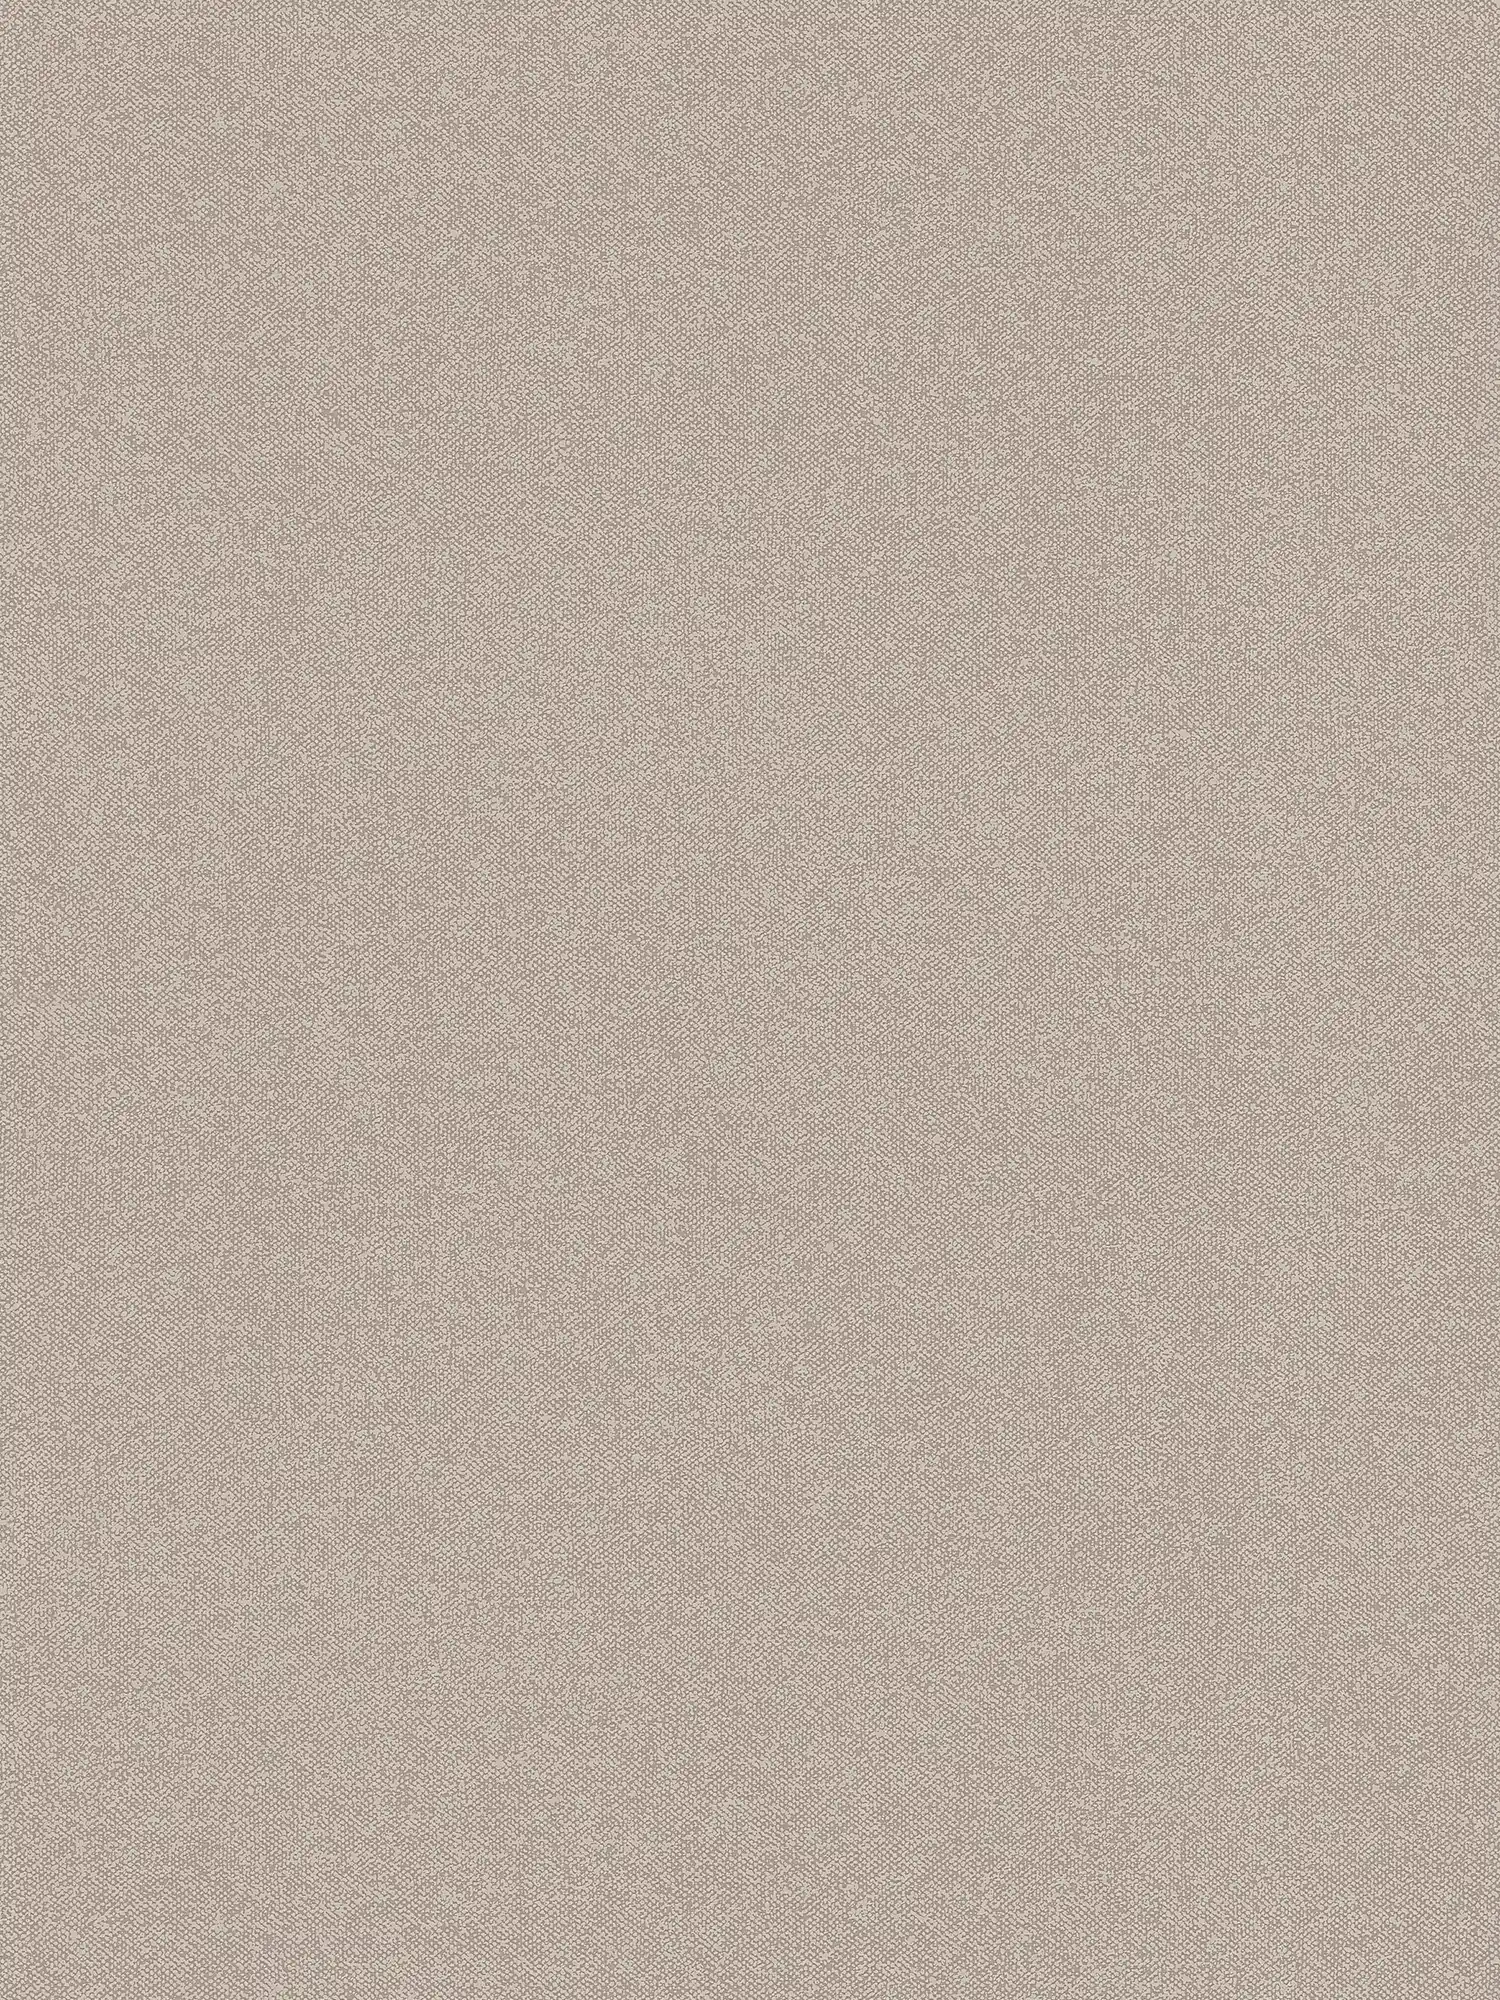 Papier peint structuré uni aspect lin - marron
